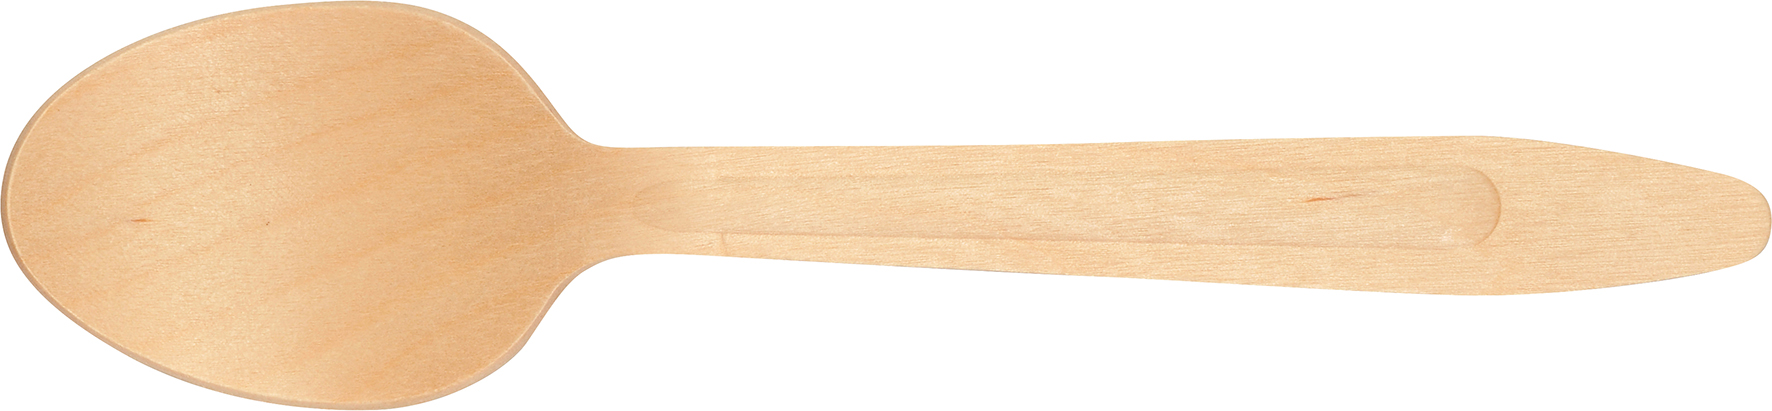 [8551827] Bestick sked trä 16,5cm 100st/